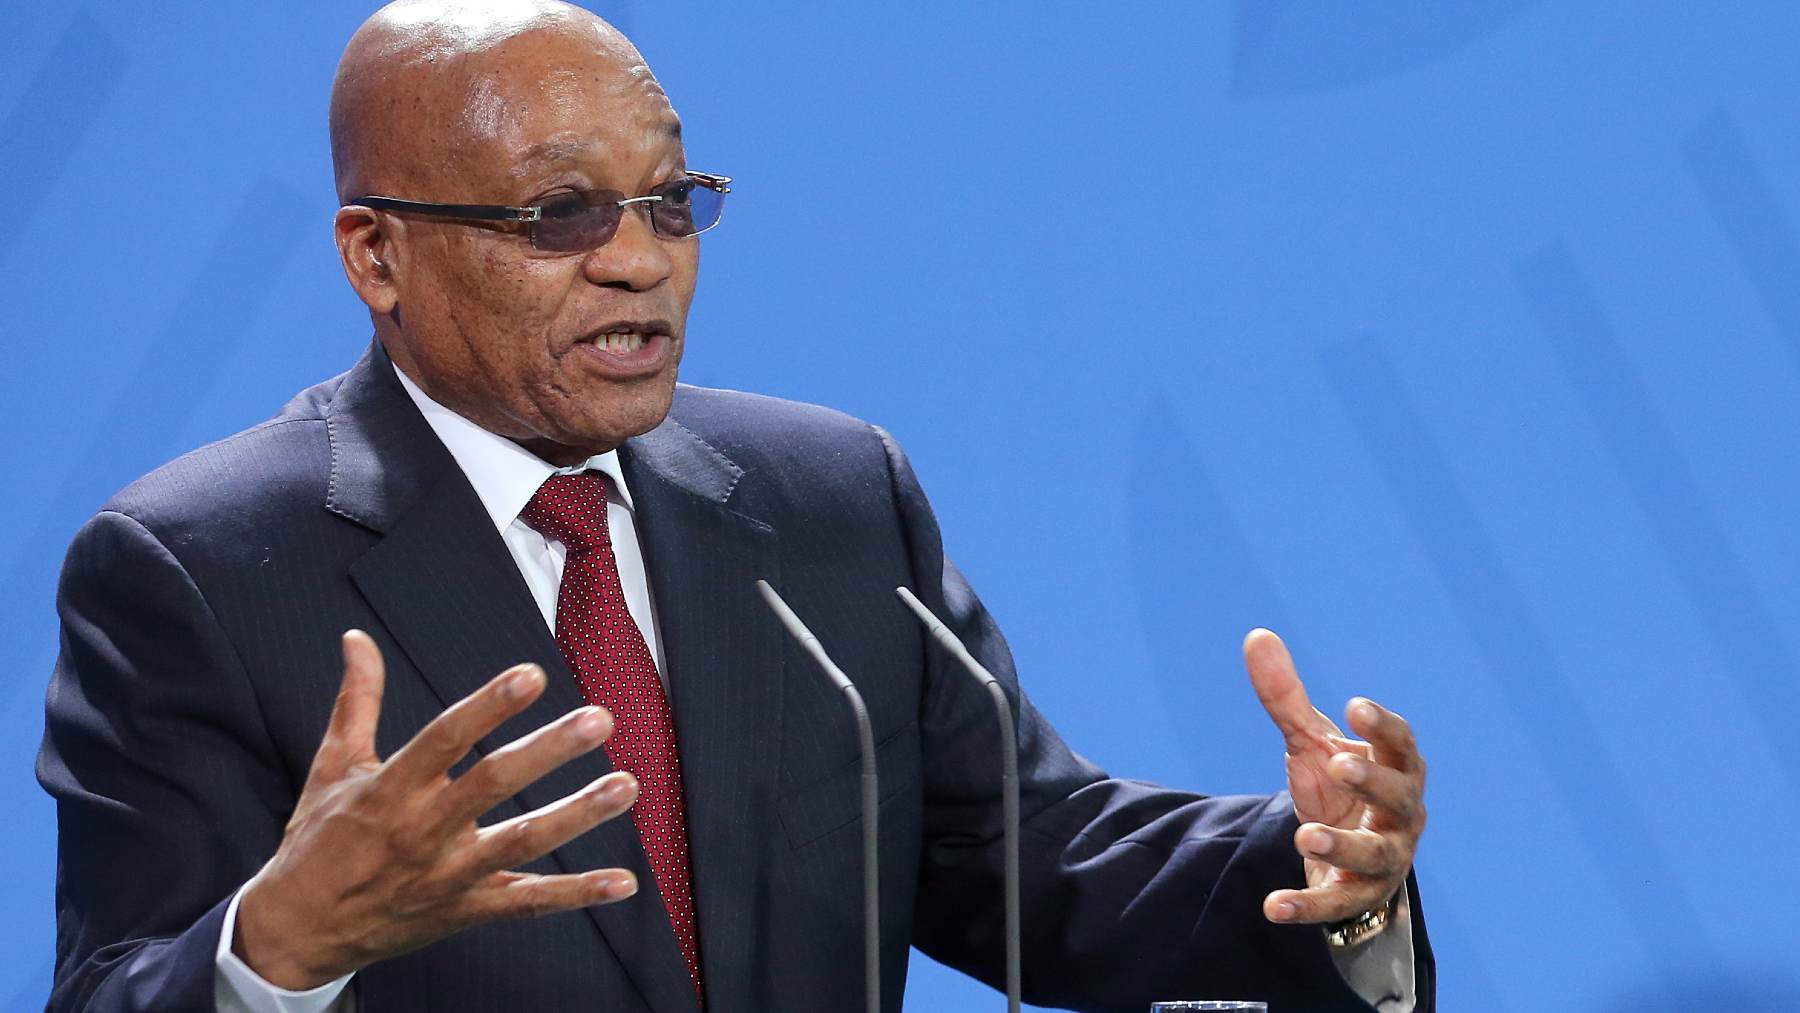 Jacob Zuma, expresidente de Sudáfrica, en una imagen de archivo. Reino Unido ha sancionado a la consultora Bain & Co. por trabajos con su Gobierno, acusado de corrupción. Wolfgang Kumm / dpa